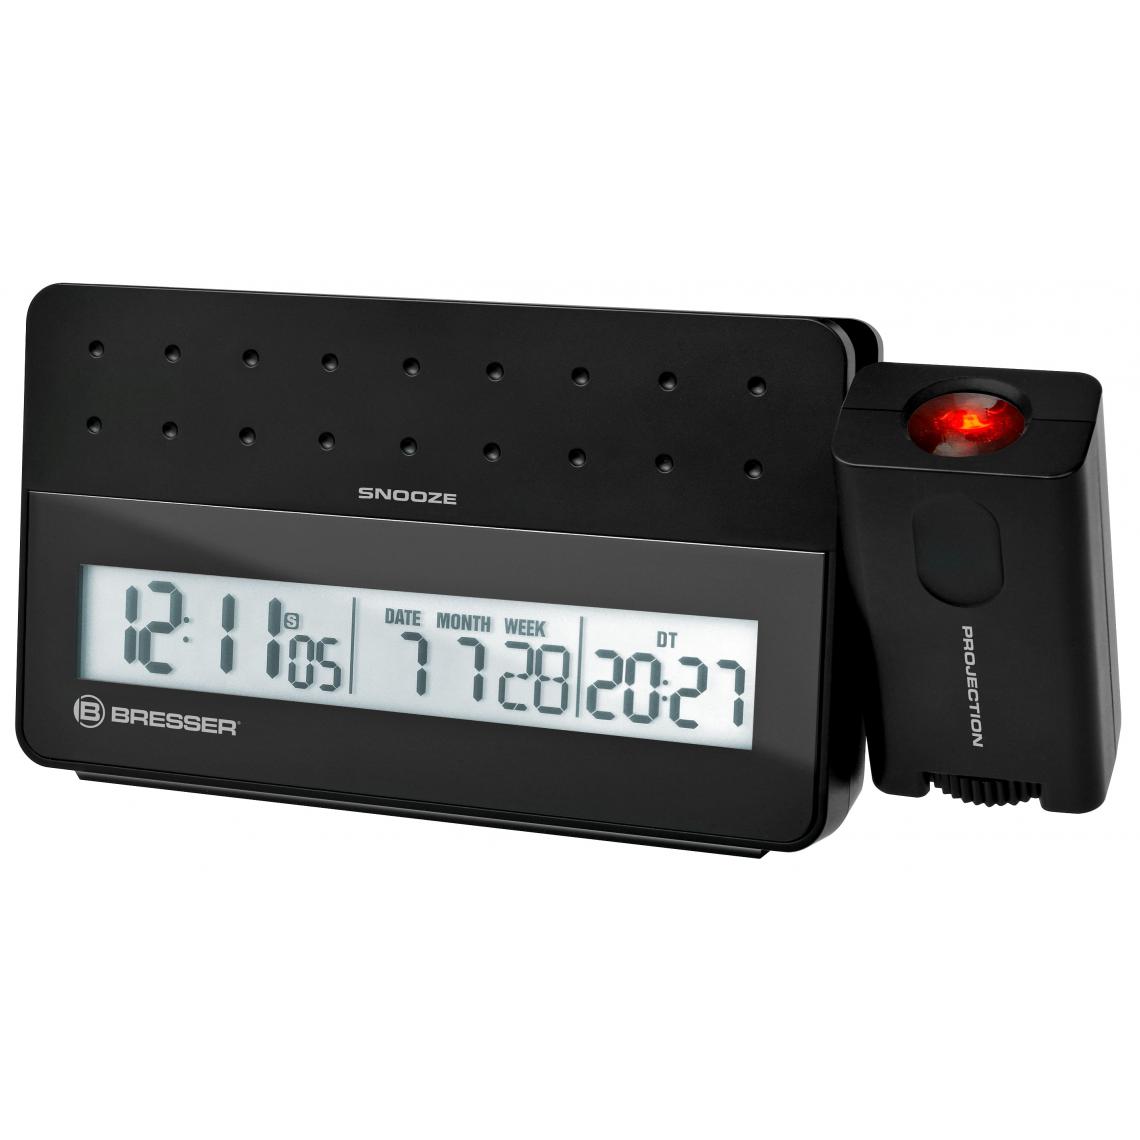 Bresser - Réveil digital radio piloté avec projecteur et port USB pour smartphone - Bresser - Météo connectée